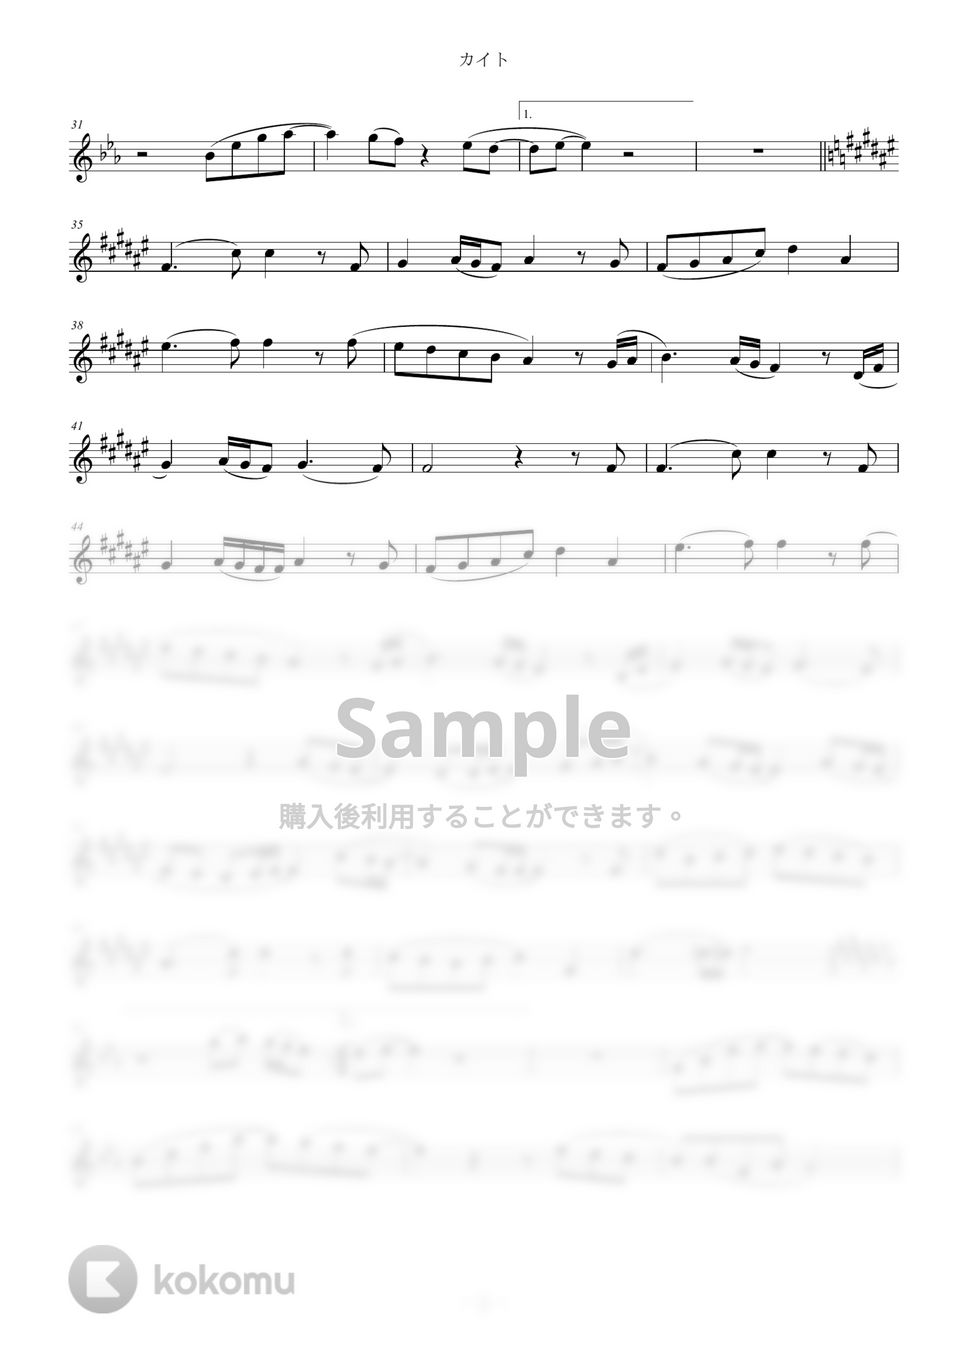 嵐 - カイト (in B♭) by y.shiori